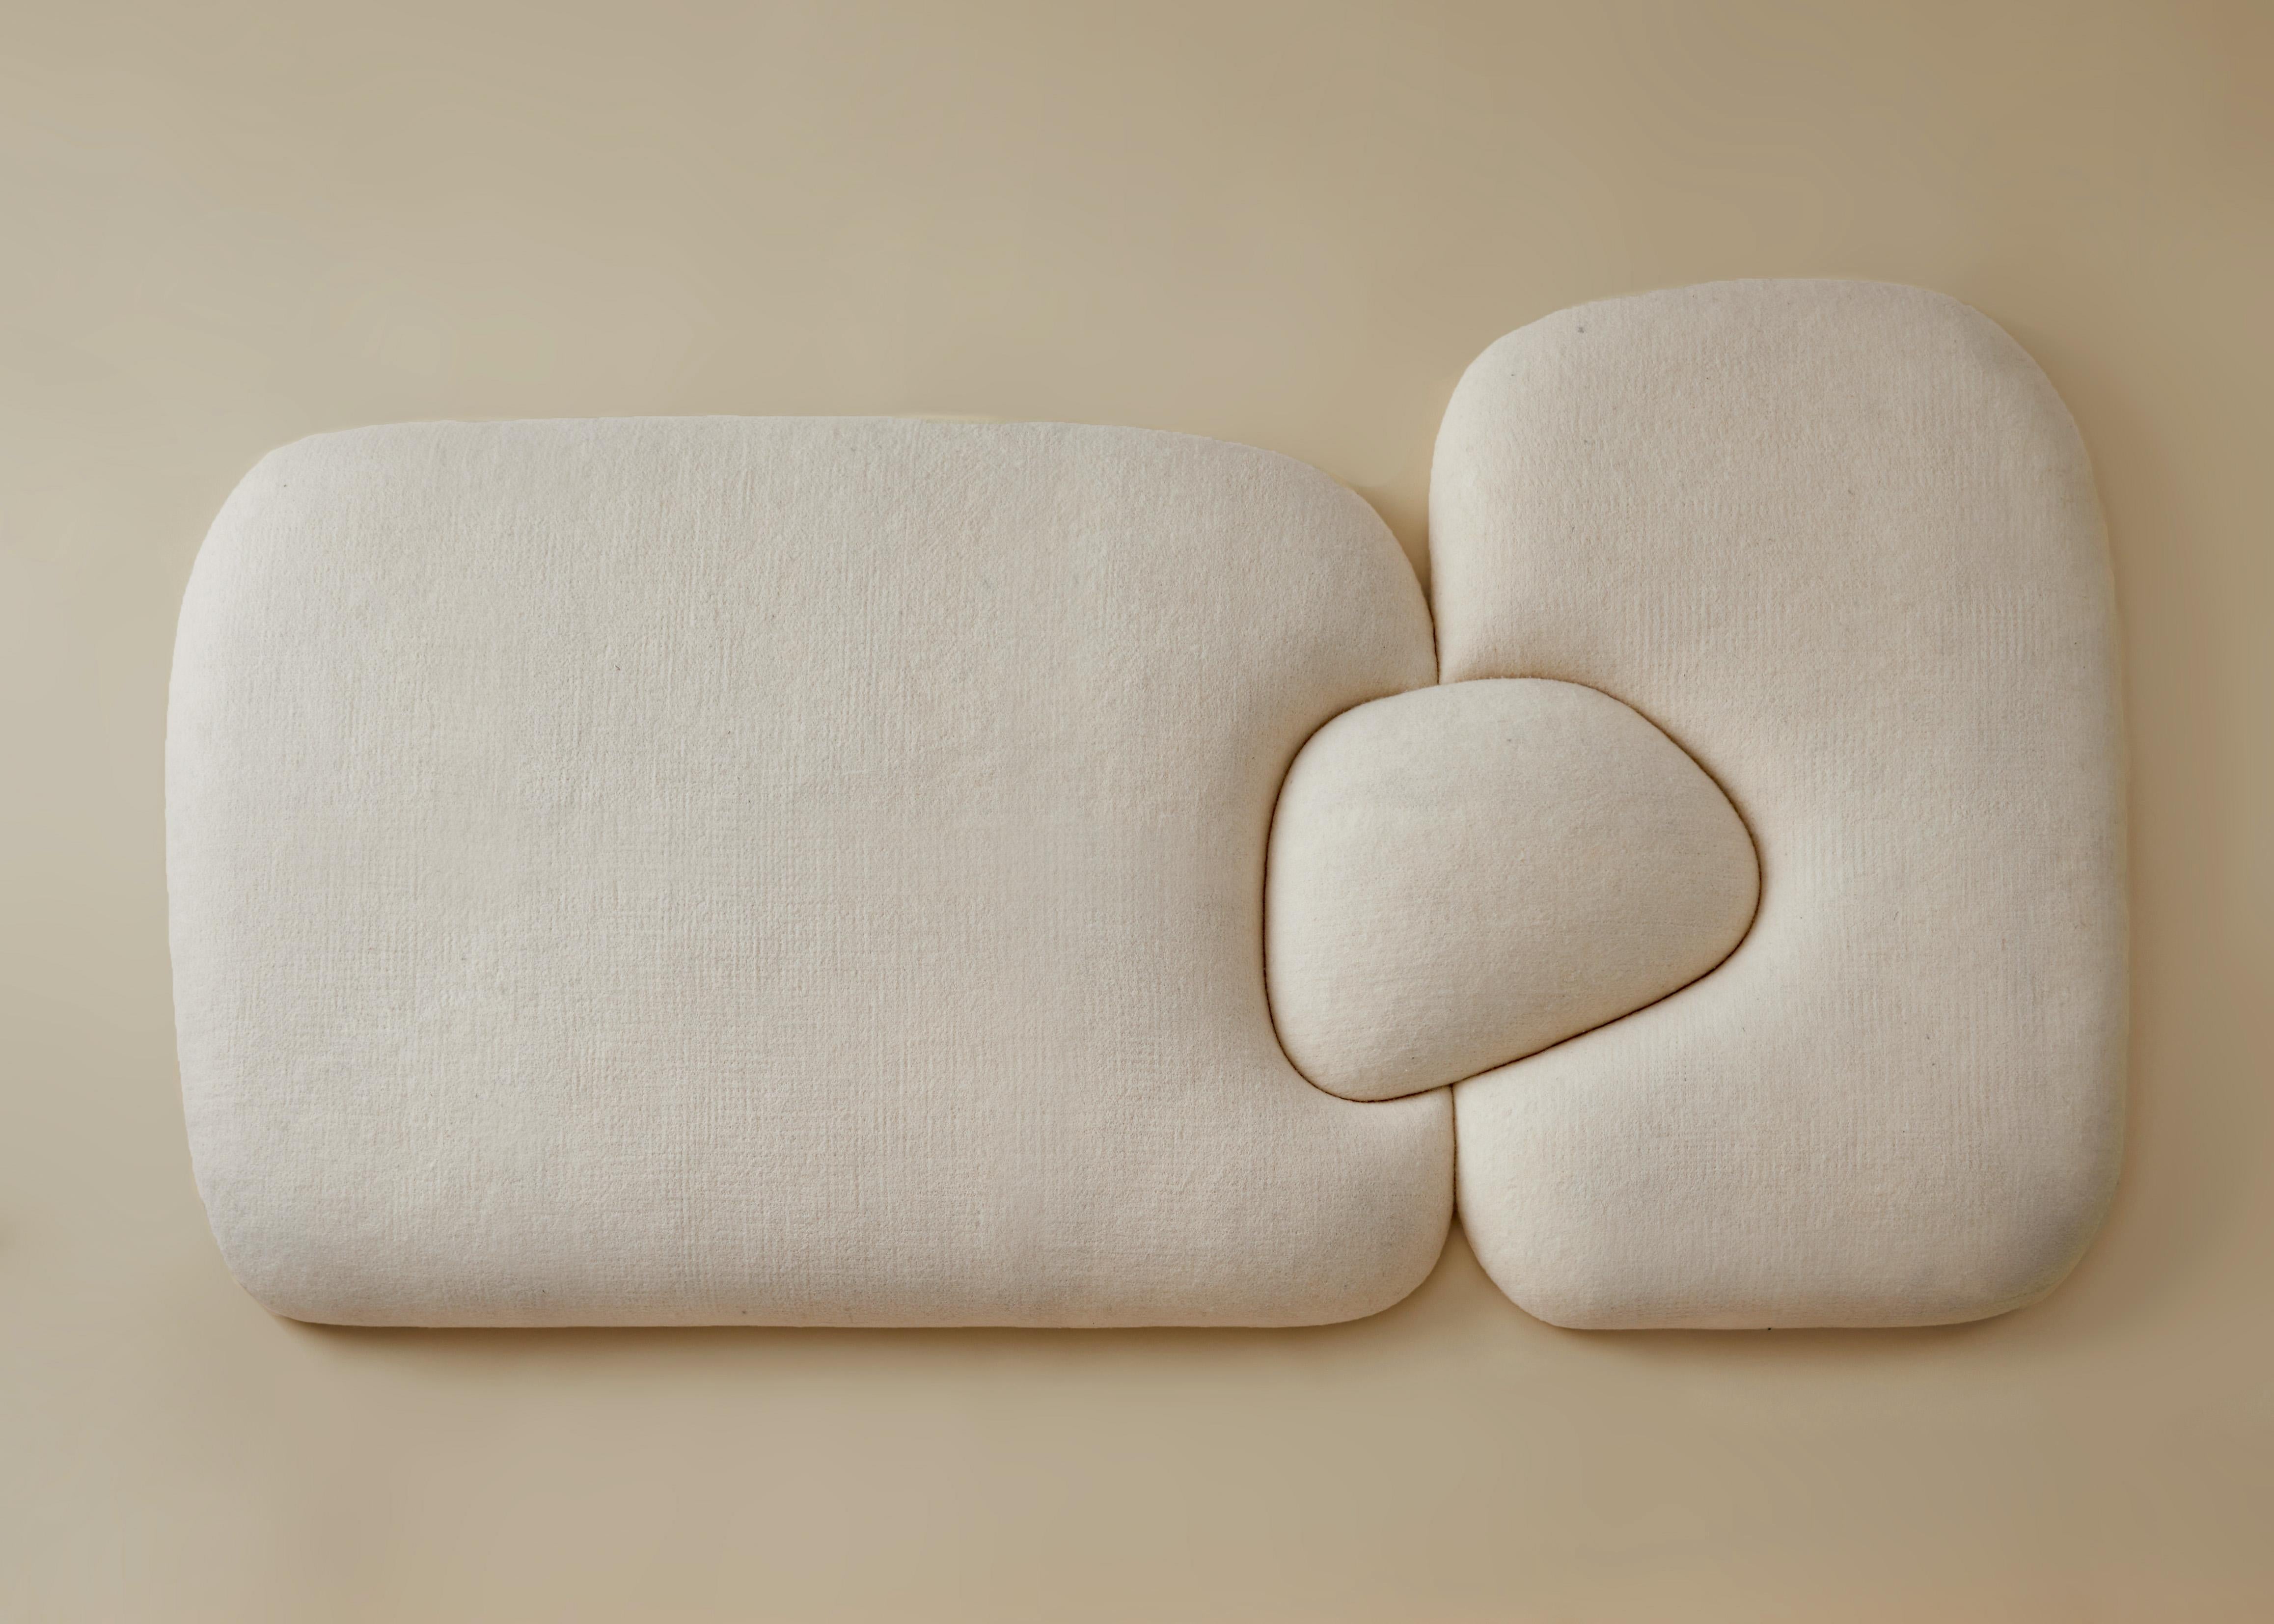 Tête de lit en forme de mouton conçue par Studio Ahead. Cet objet sculptural bouffant et doux pourrait être utilisé comme tête de lit ou comme œuvre d'art indépendante. 

Il est recouvert de feutre de laine mérinos crème provenant de moutons de